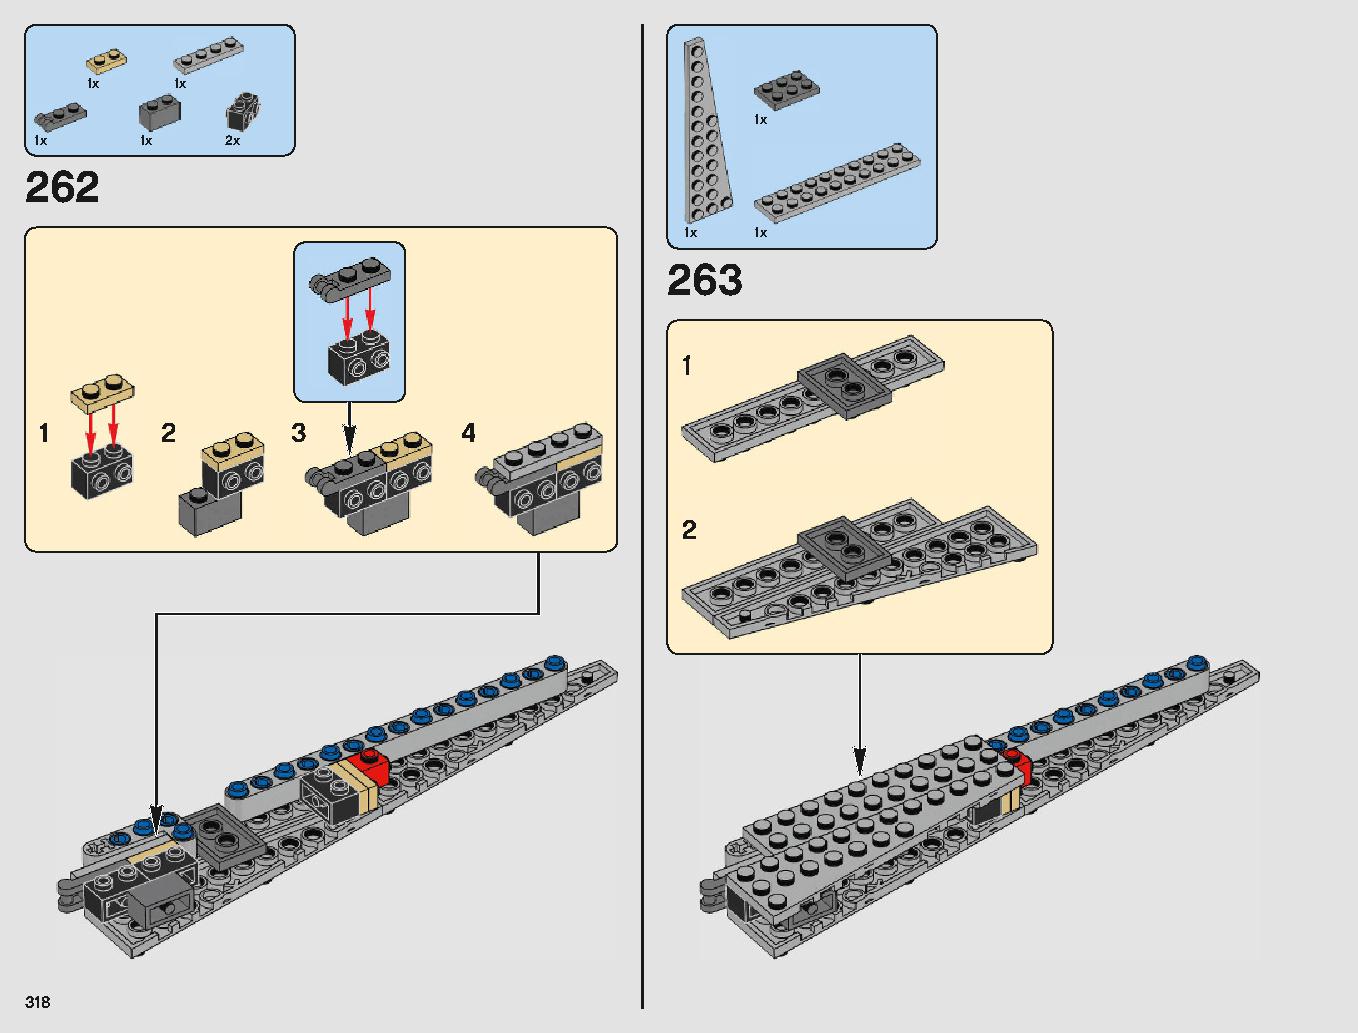 クラウド・シティ 75222 レゴの商品情報 レゴの説明書・組立方法 318 page